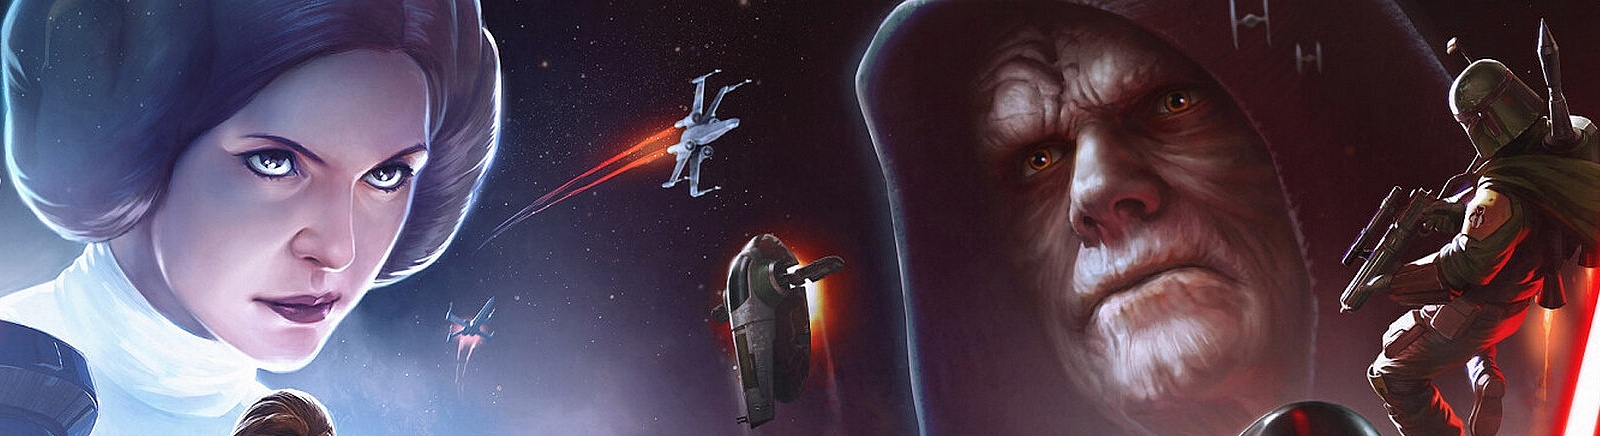 Дата выхода Star Wars: Force Arena  на iOS и Android в России и во всем мире